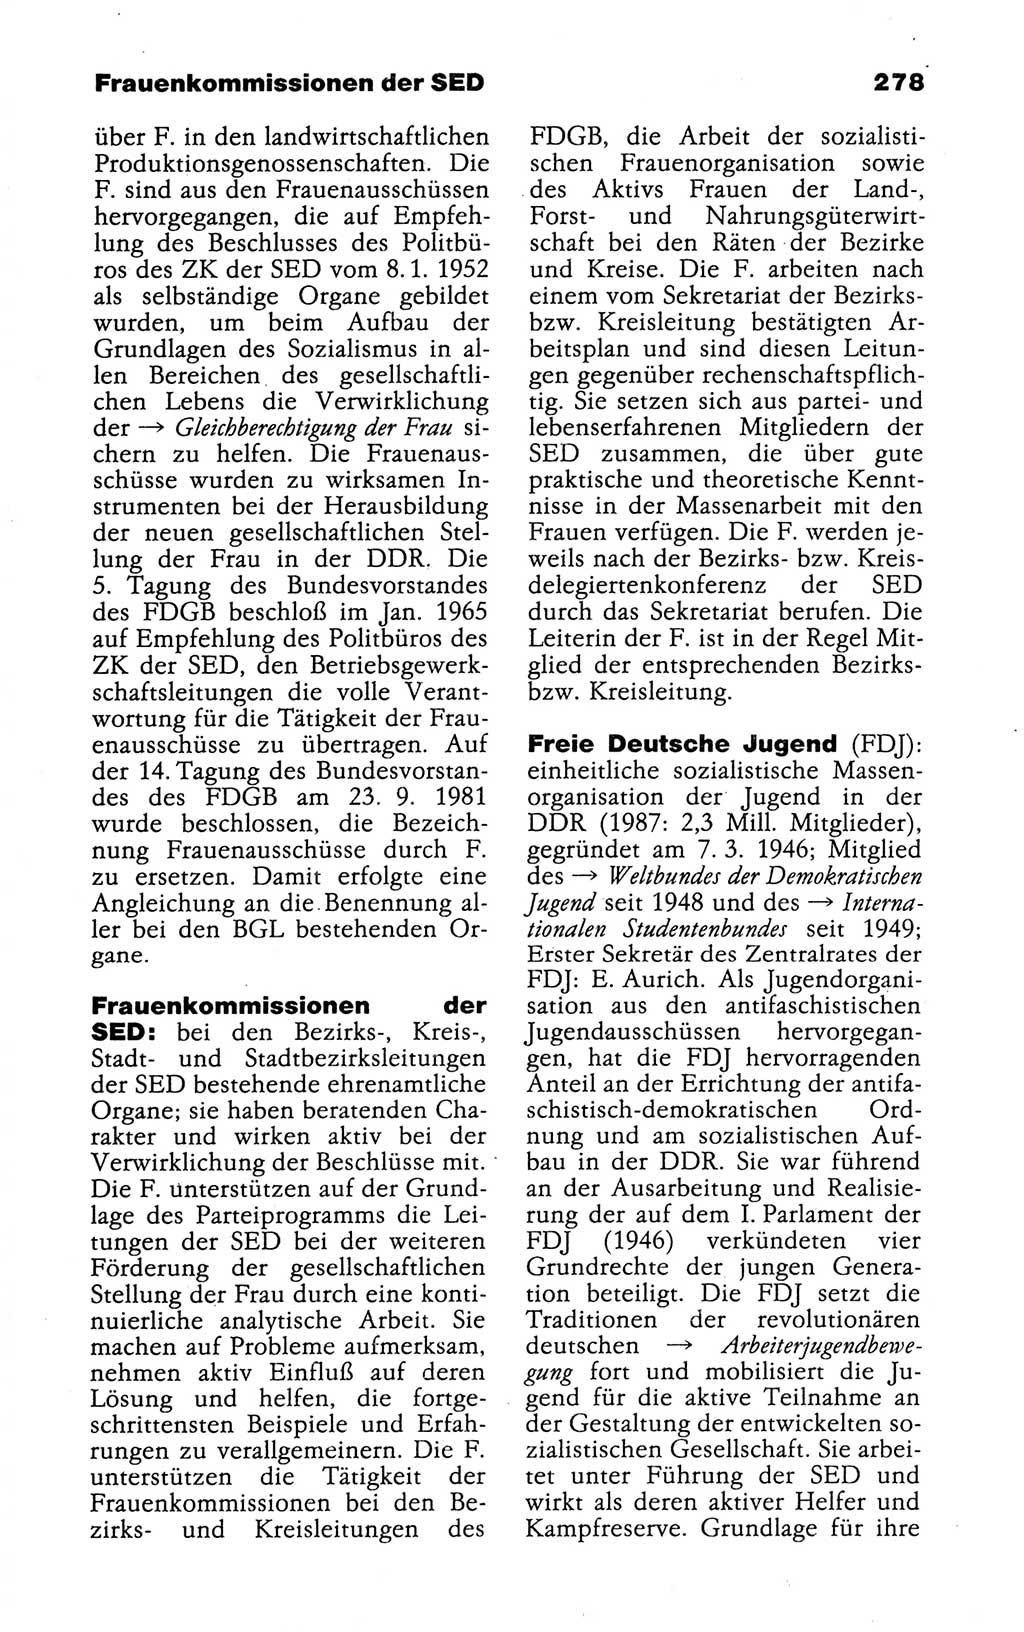 Kleines politisches Wörterbuch [Deutsche Demokratische Republik (DDR)] 1988, Seite 278 (Kl. pol. Wb. DDR 1988, S. 278)